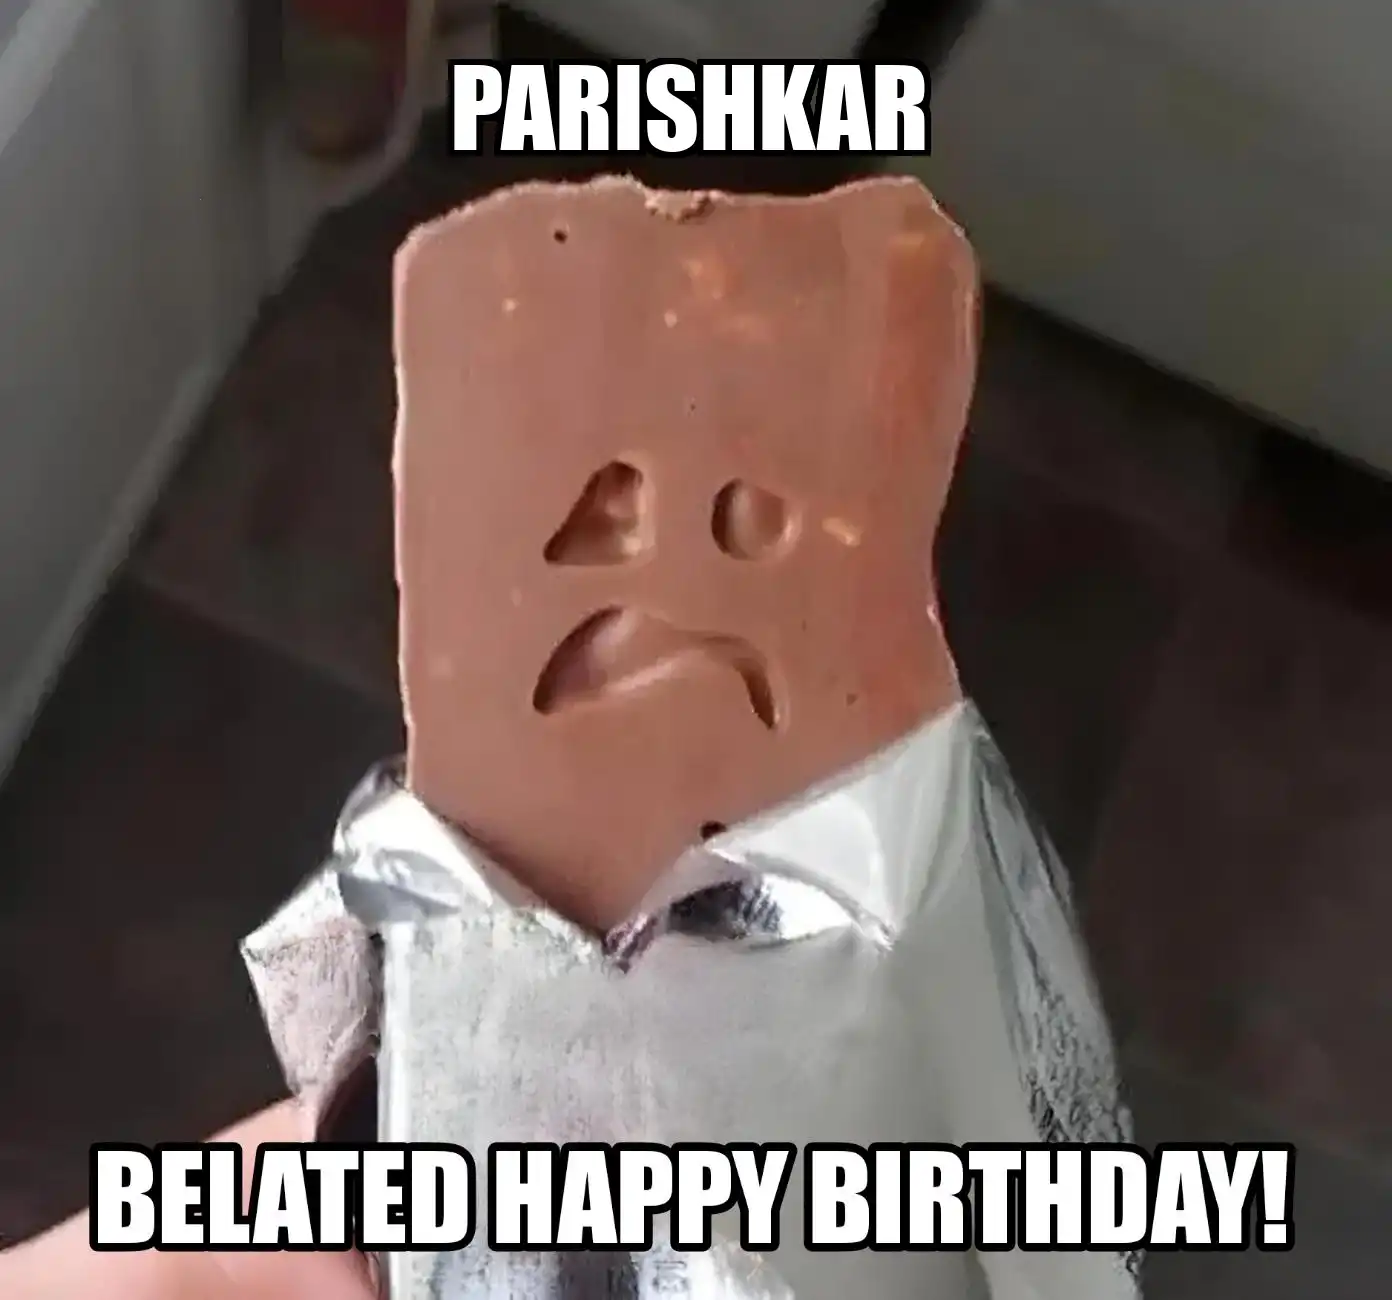 Happy Birthday Parishkar Belated Happy Birthday Meme